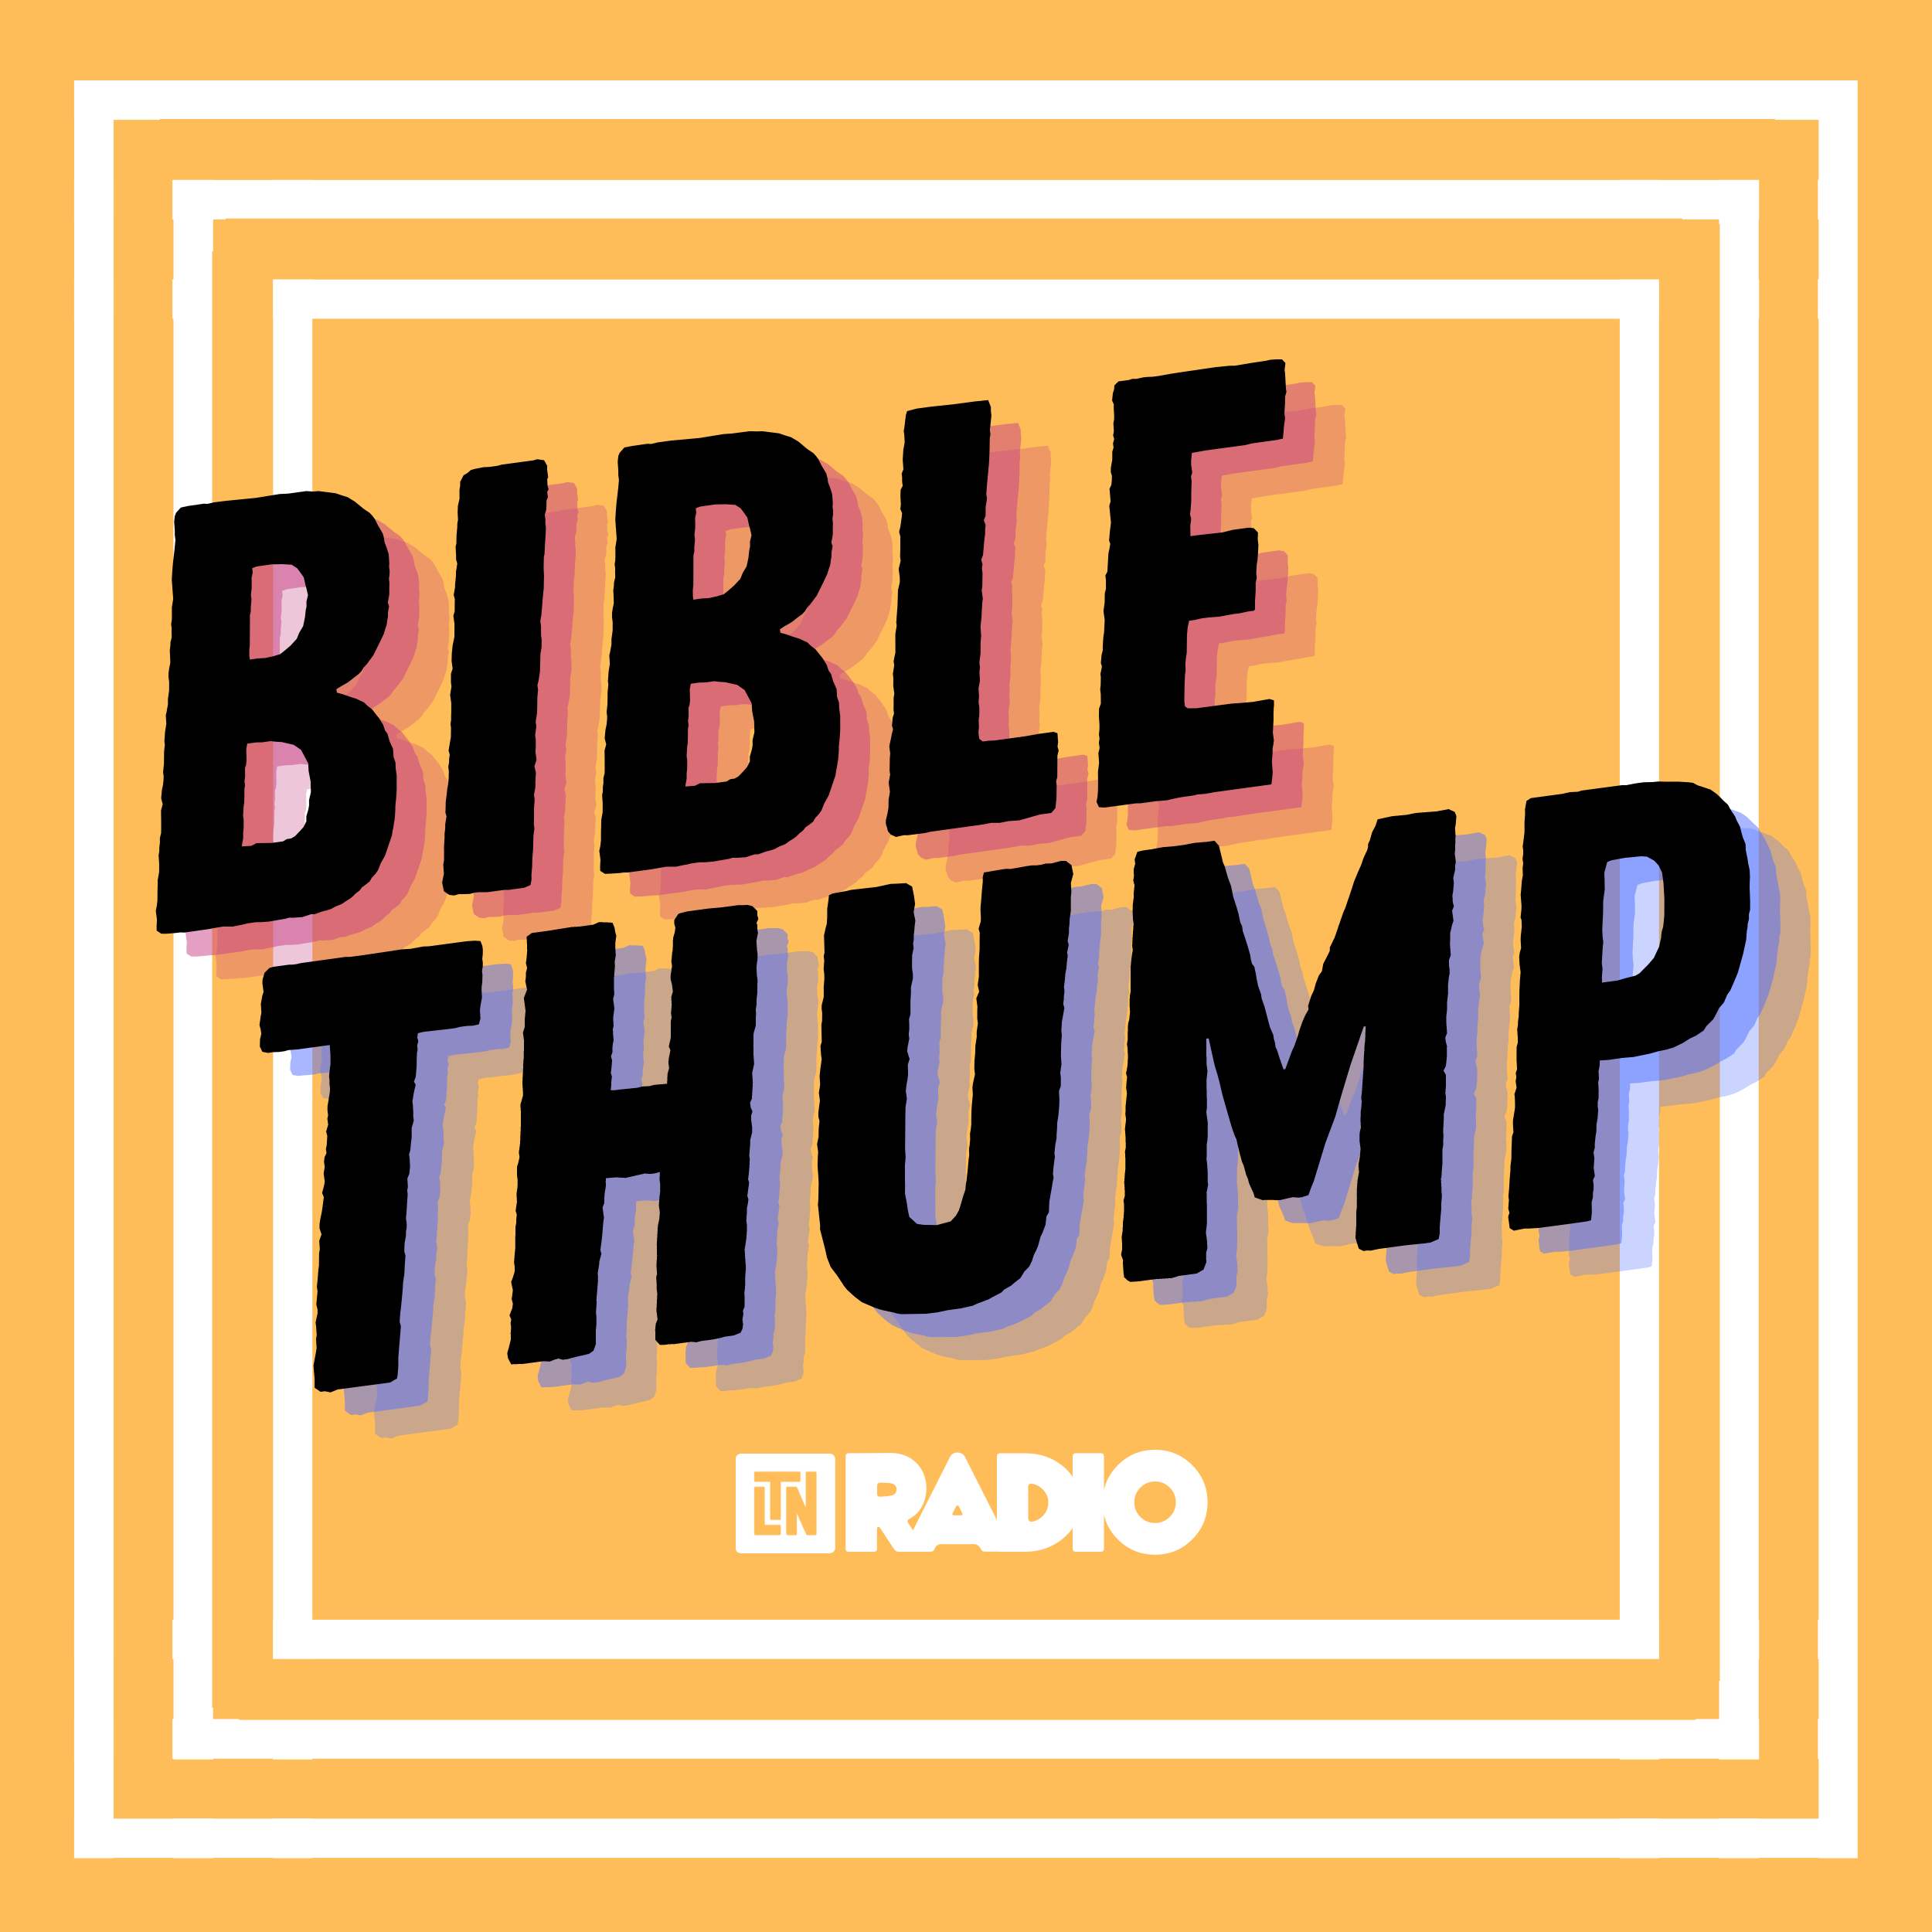 Bible Thump 2 | The Royal Task